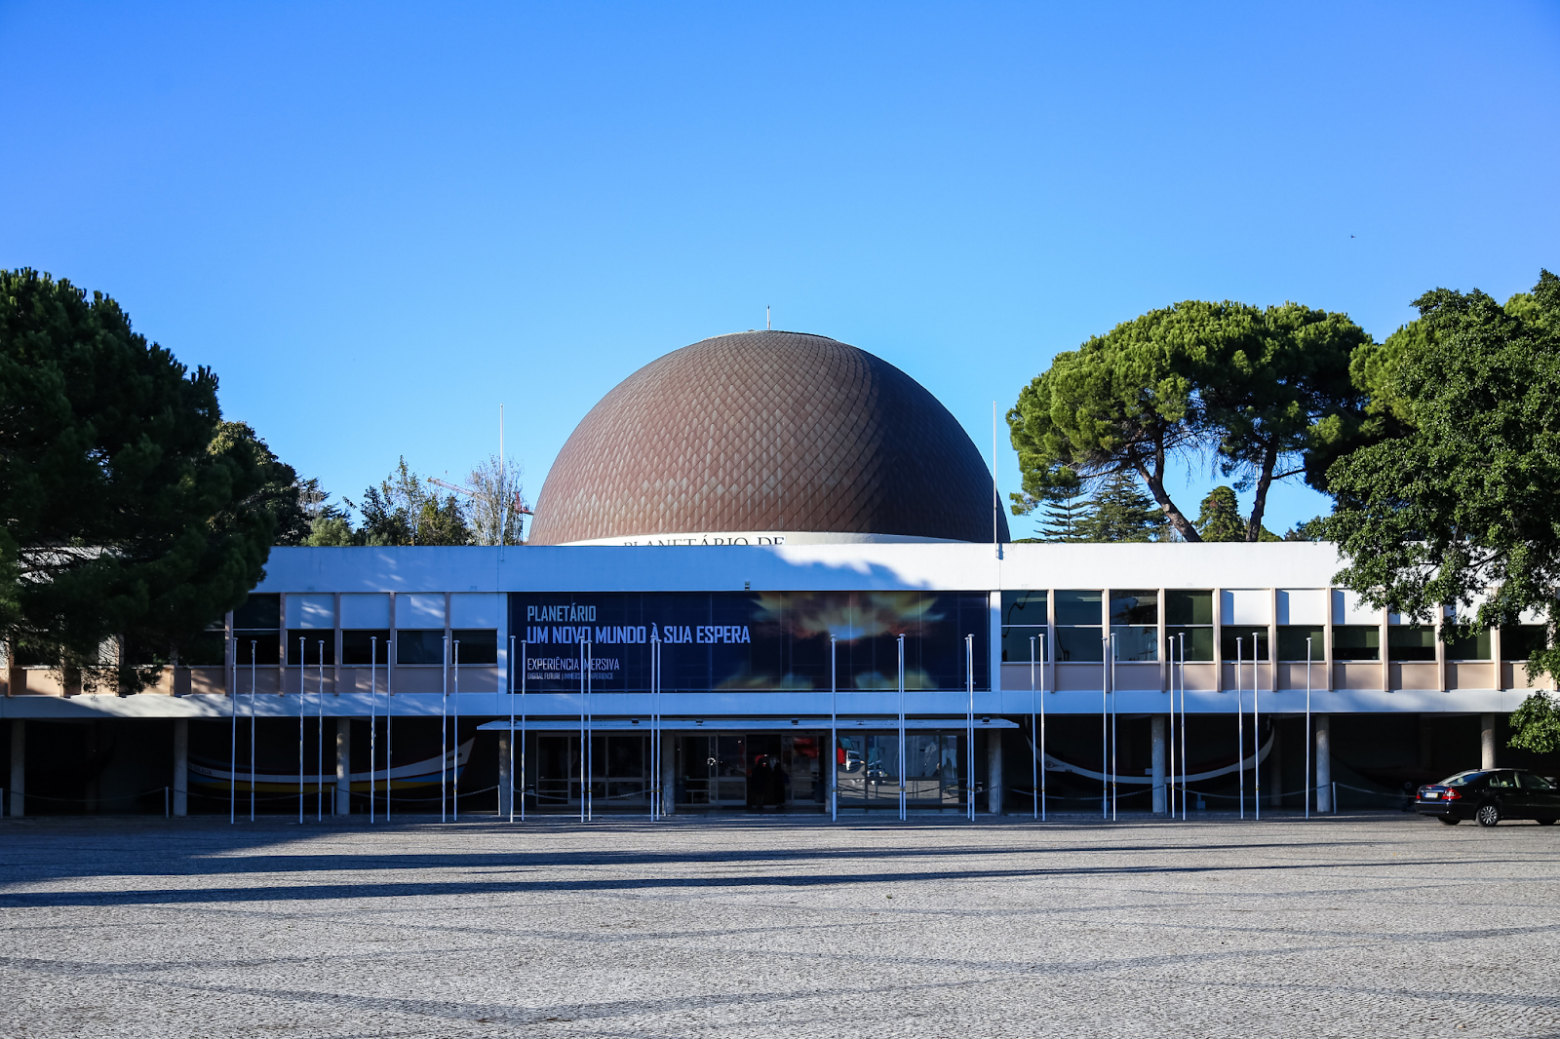 Второй крупнейший планетарий в Европе находится в Лиссабоне... ну вы поняли, его тоже финансировал Фонд Гюльбенкяна